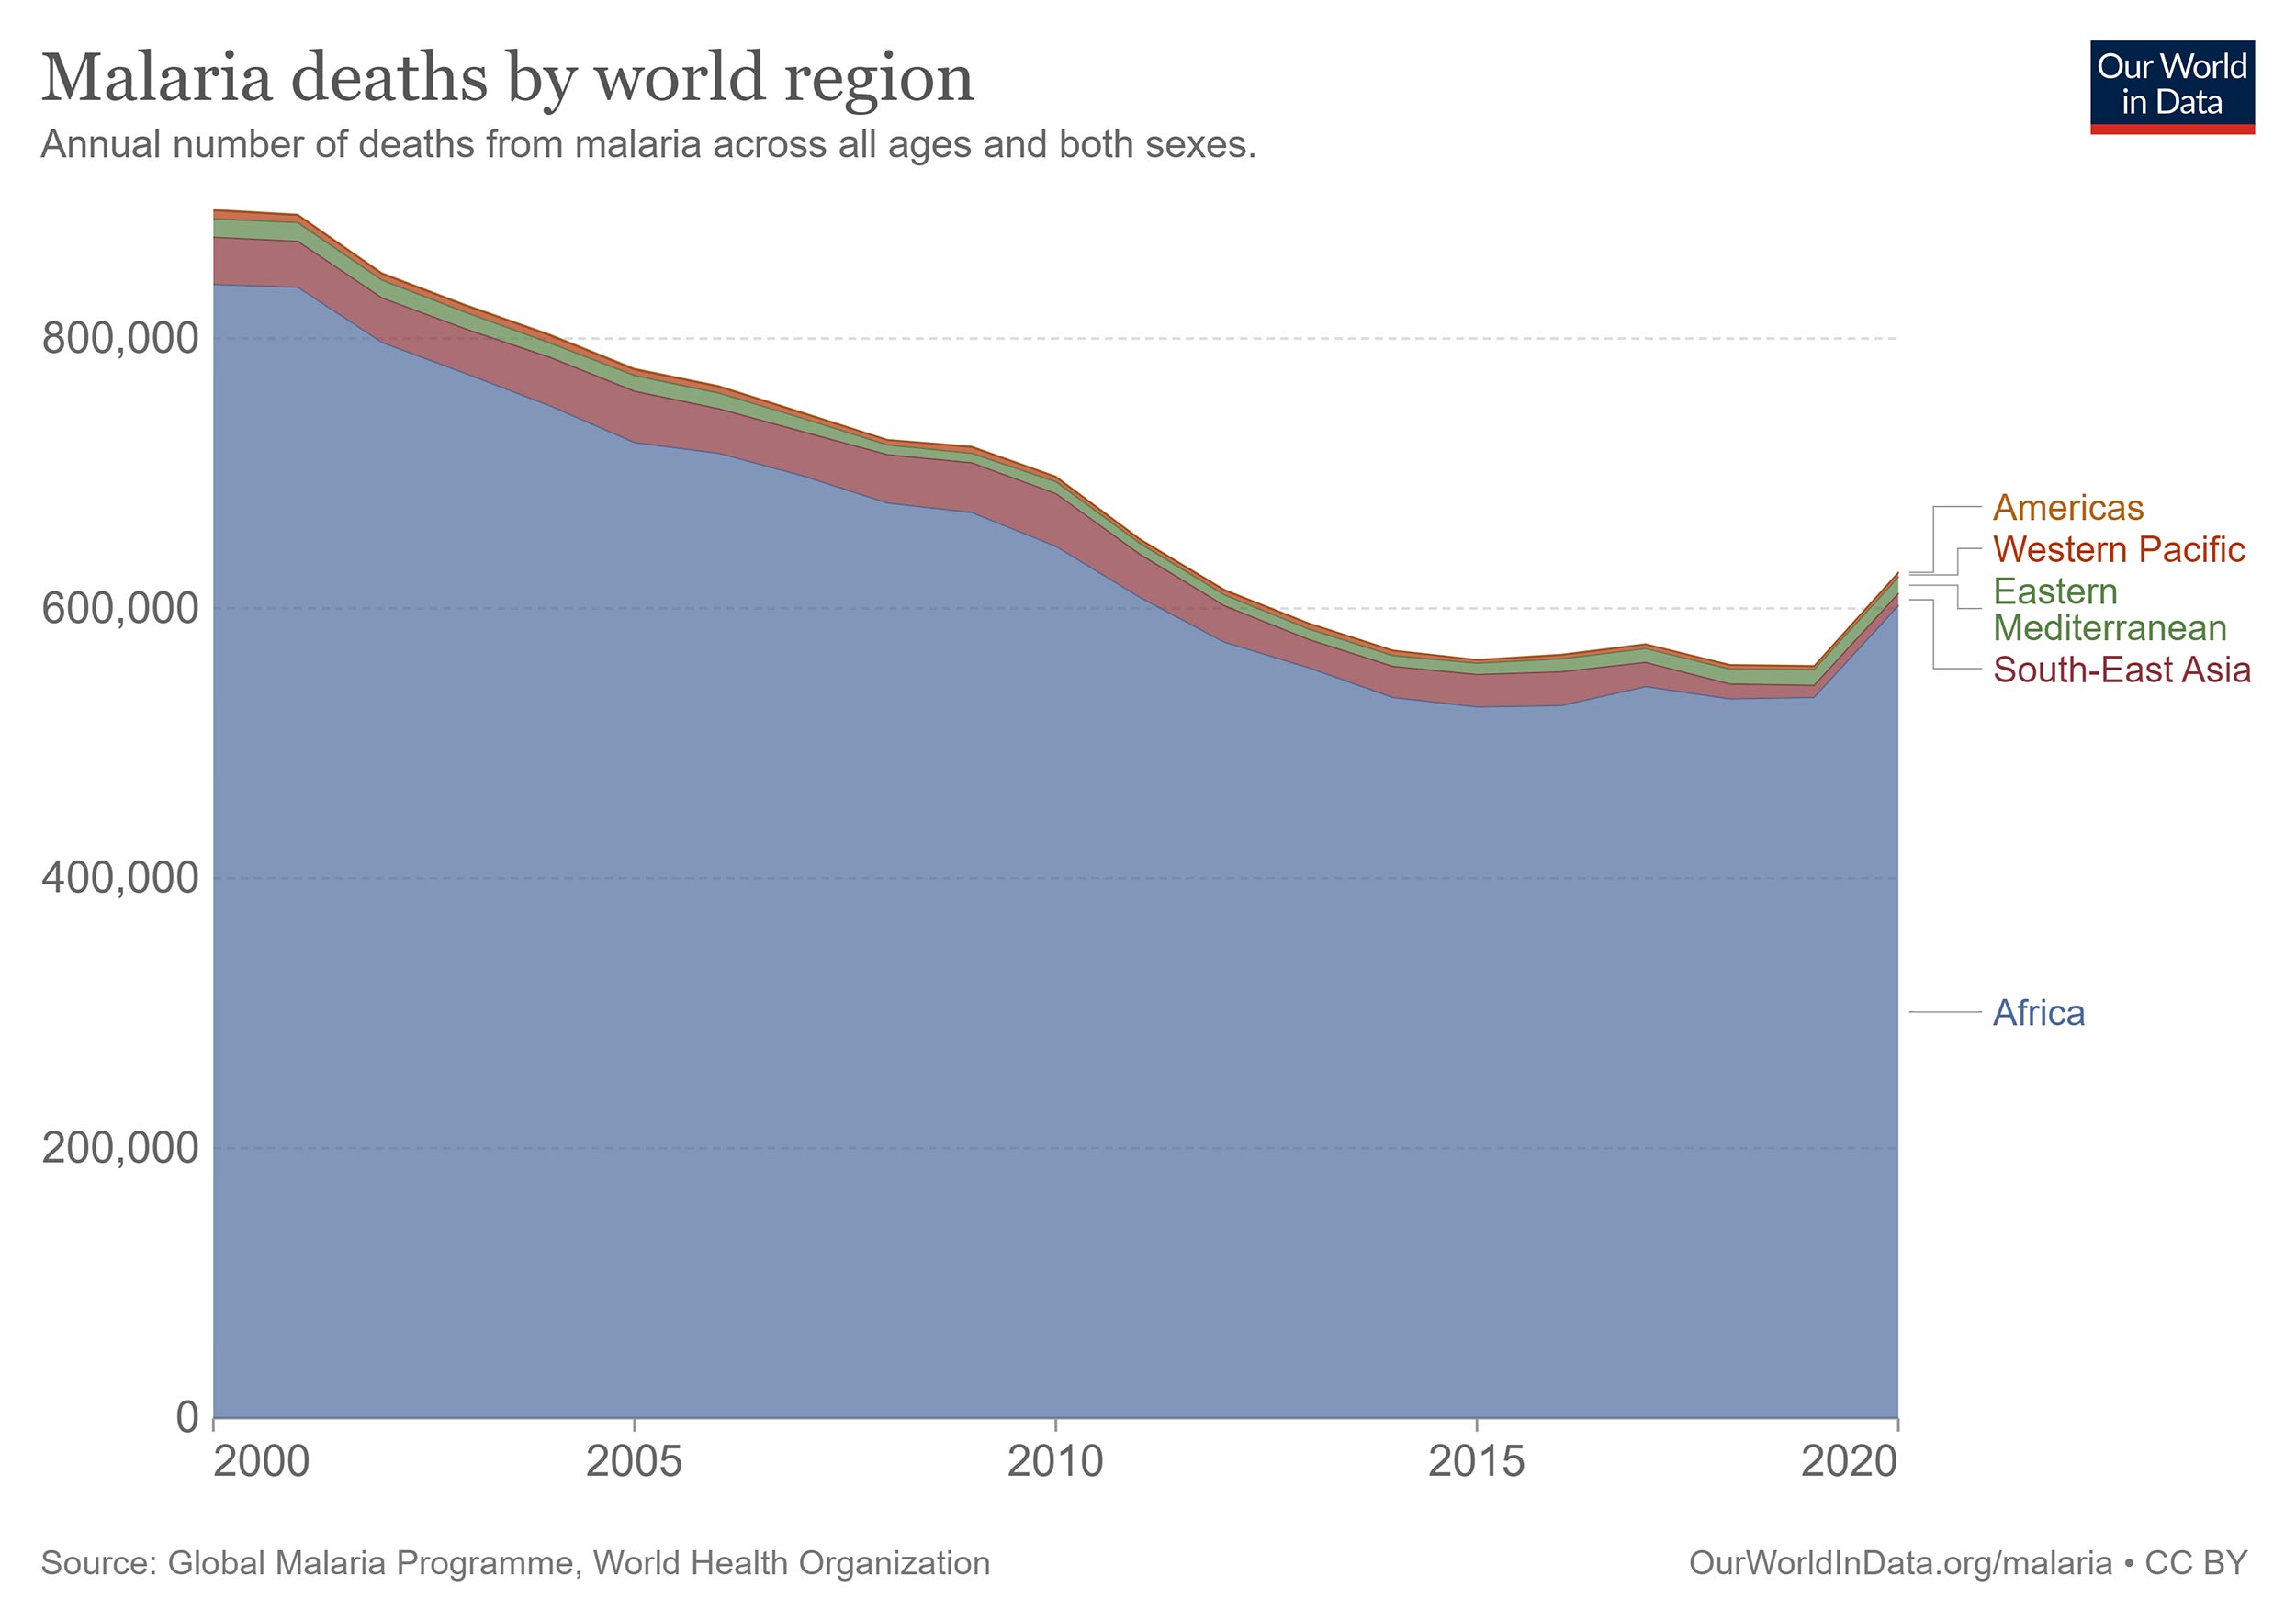 Diagram över antal dödsfall i Malaria per år och världsdel. Det totala antalet dödsfall har sjunkit från 800 000 (år 2000) till runt 600 000 (år 2020) men man ser att dödsfallen i Afrika är kraftigt överrepresenterade i statistiken. 